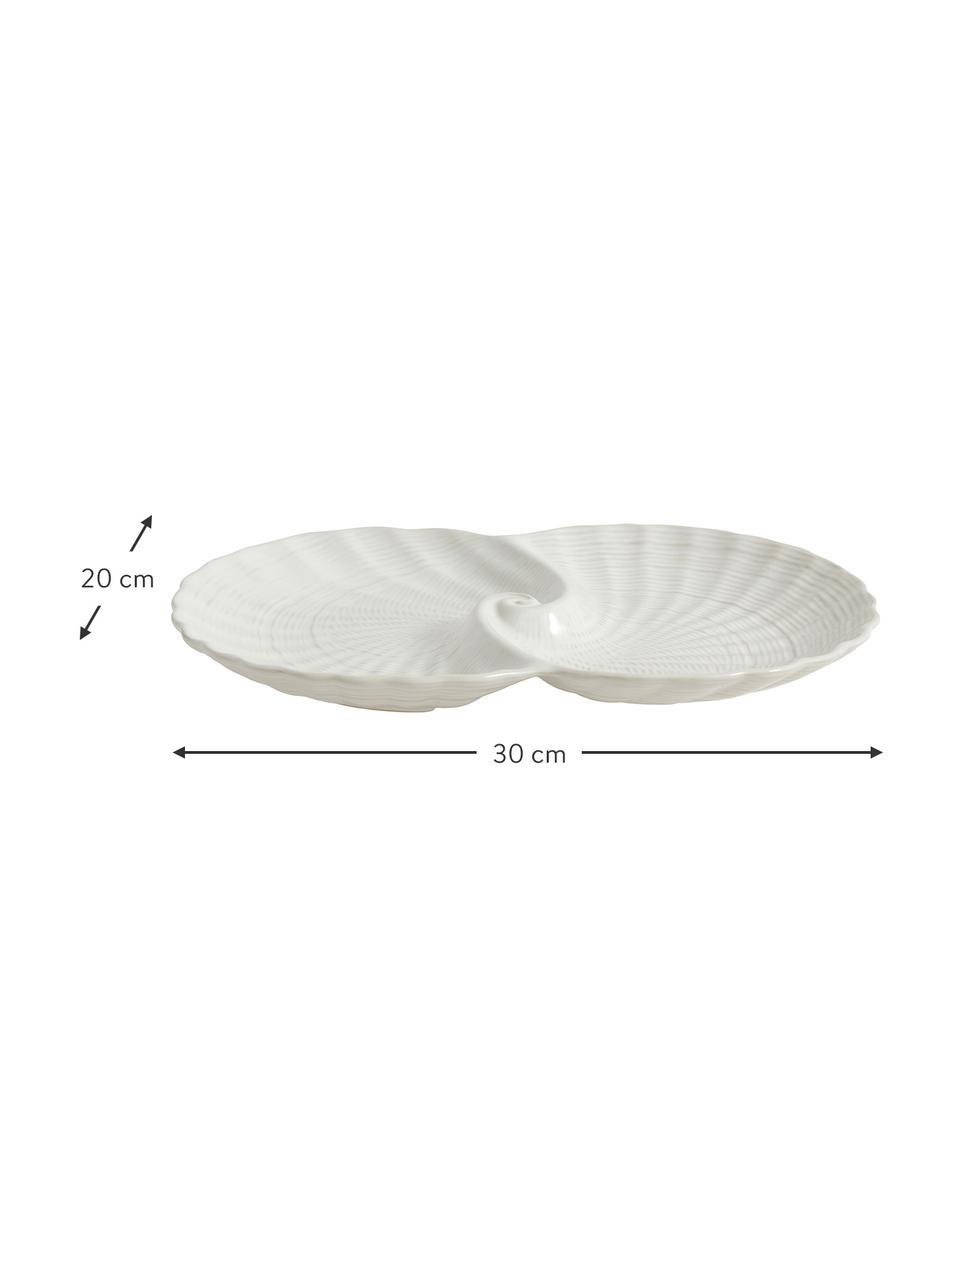 Miska dekoracyjna Gullfoss, Ceramika, Biały, S 30 x G 20 cm